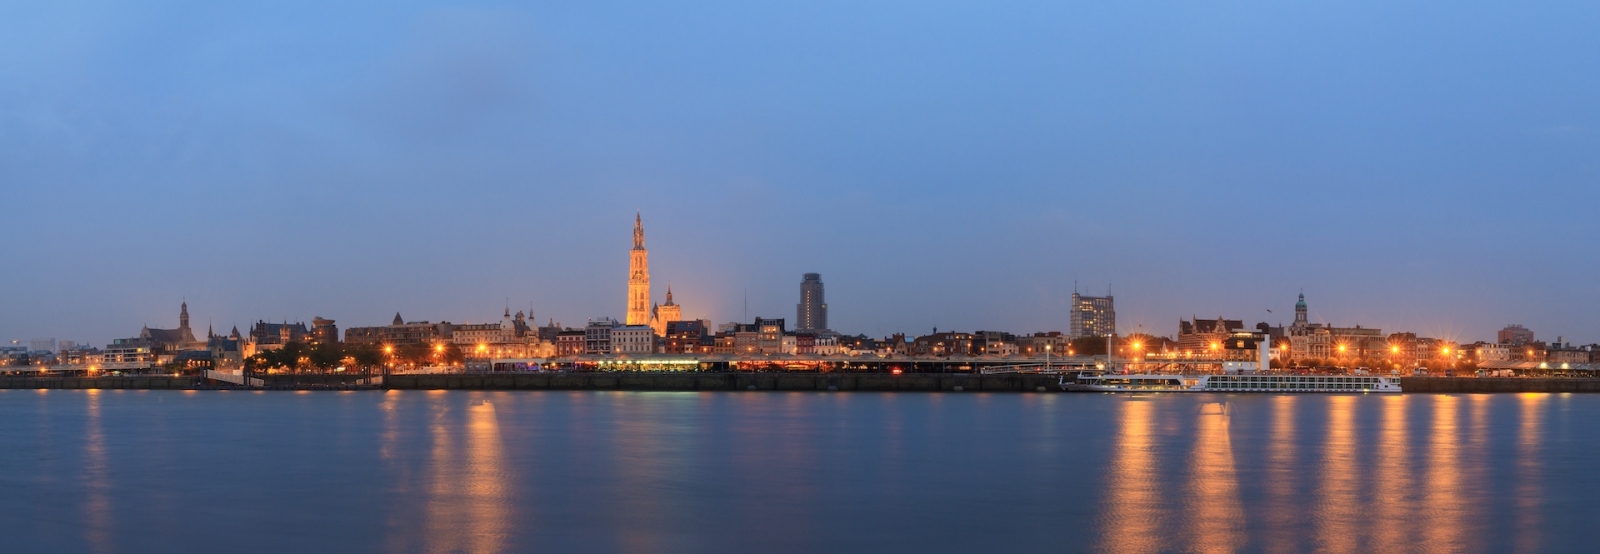 Beau panorama de paysage urbain de l'horizon d'Anvers, Belgique, pendant l'heure bleue vue du rivage de la rivière Scheldt